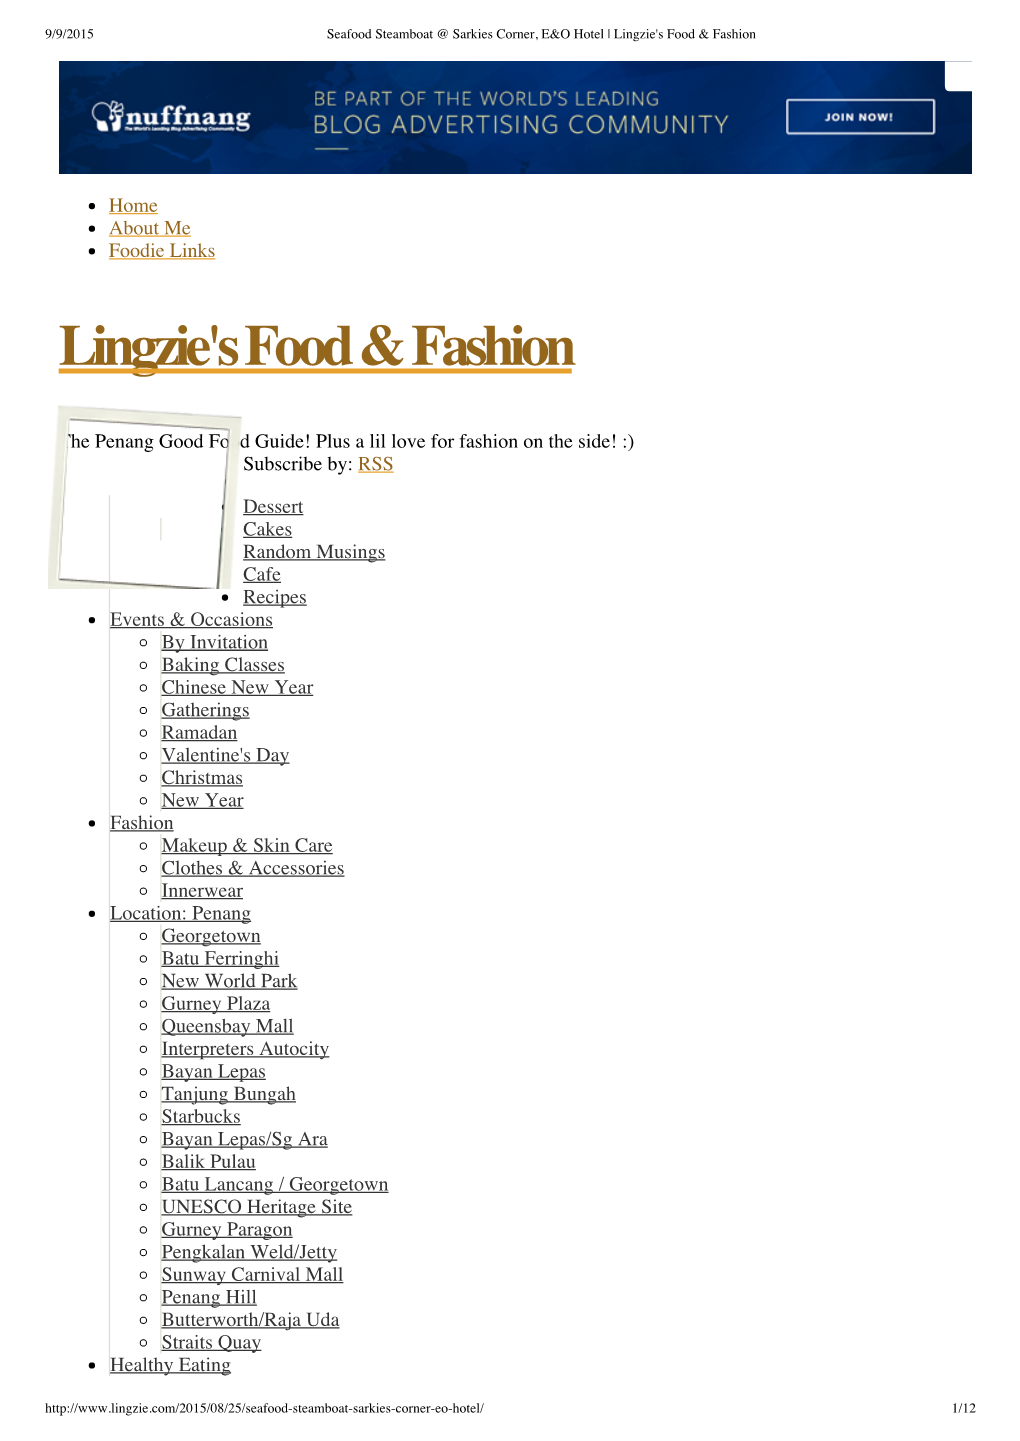 Lingzie's Food & Fashion